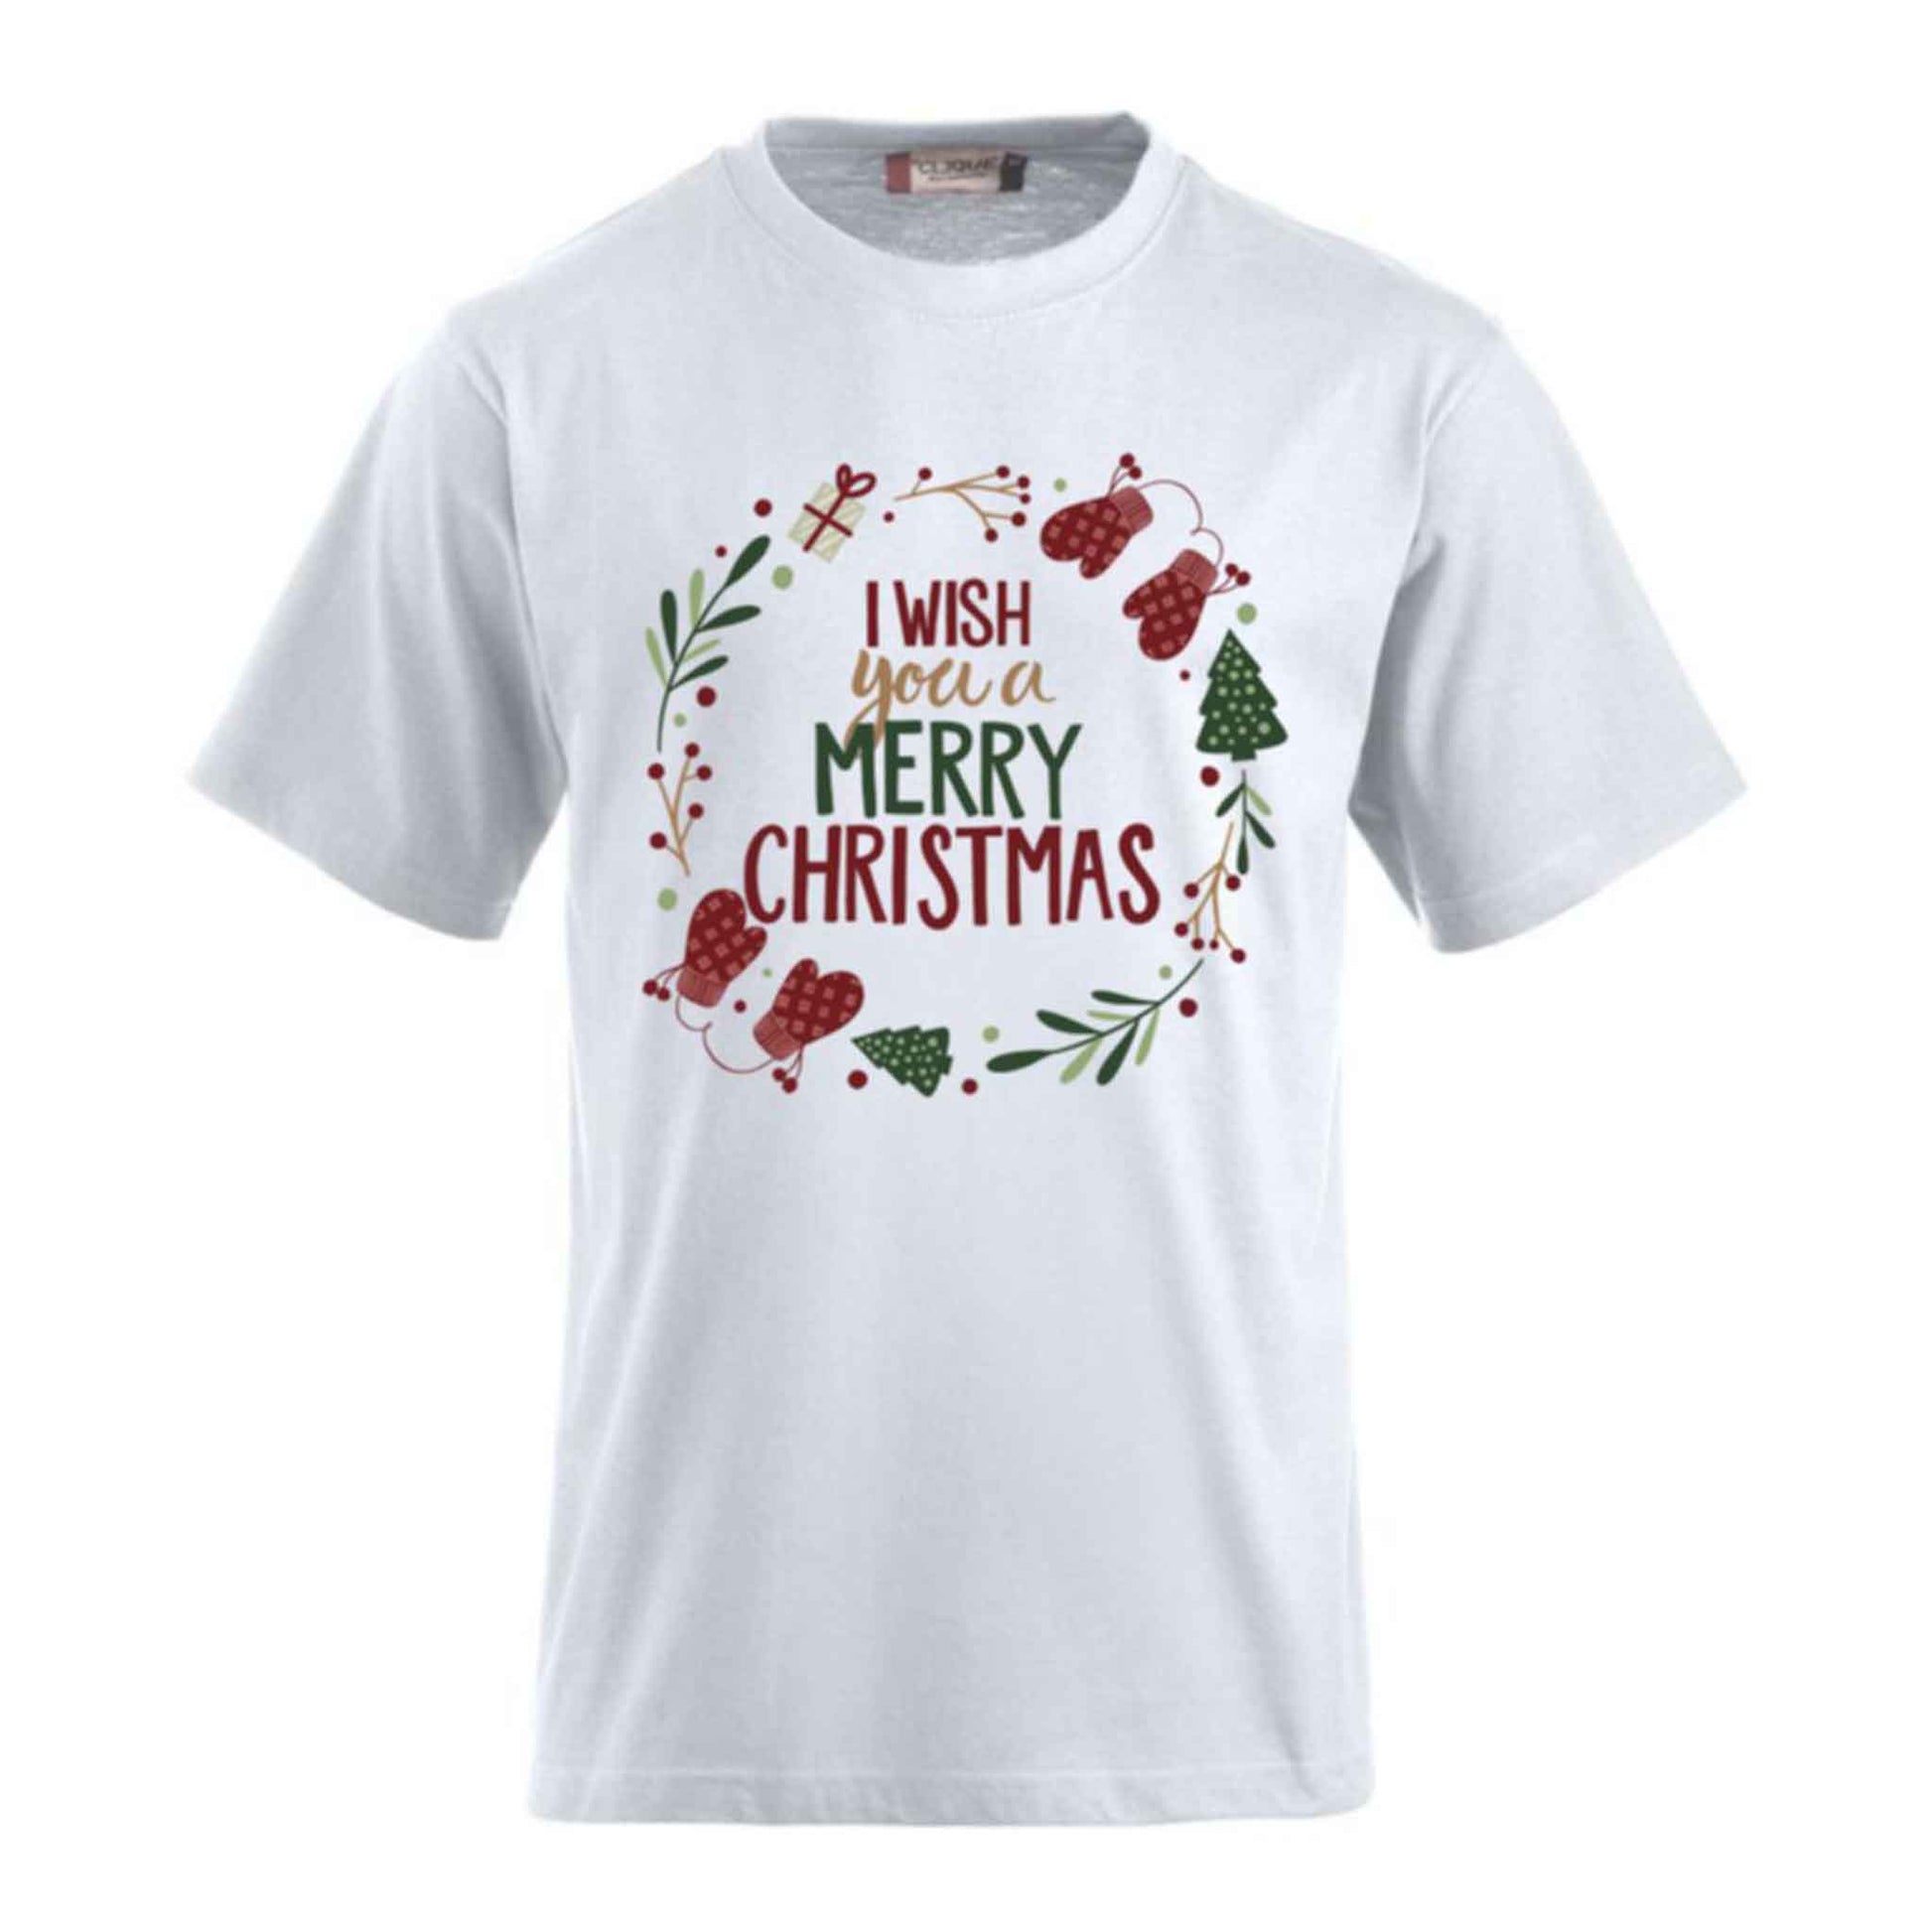 T-Shirts bedrucken mit Sprüchen - I WISH you a Merry CHRISTMAS